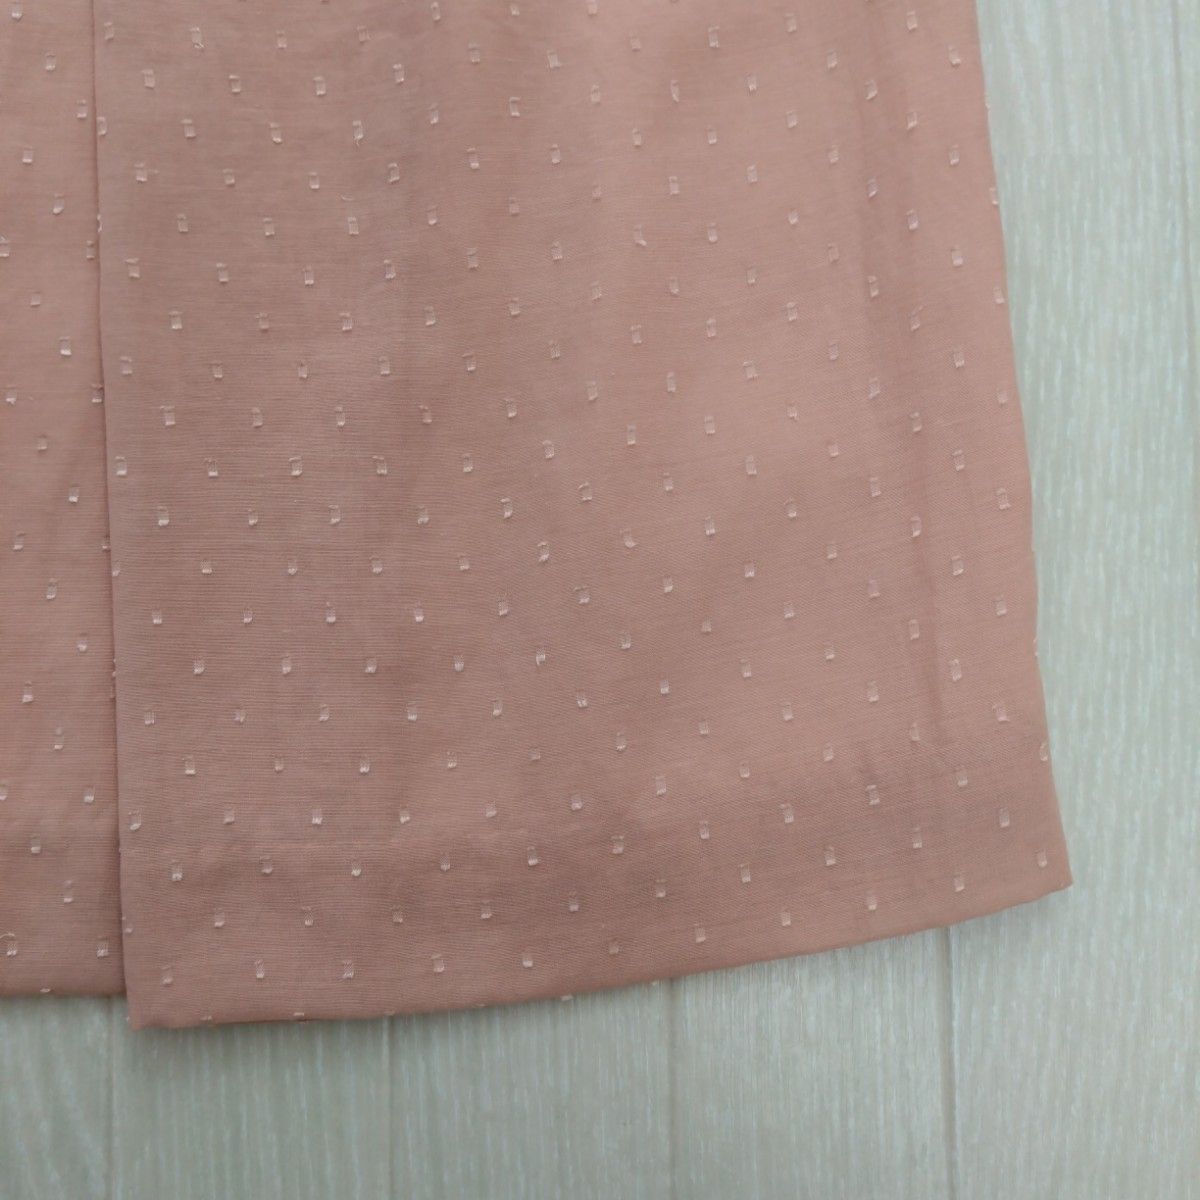 【新品タグ付き♪】カールパークレーン フレアスカート リボン 春物 スカート リボン付き ROPE